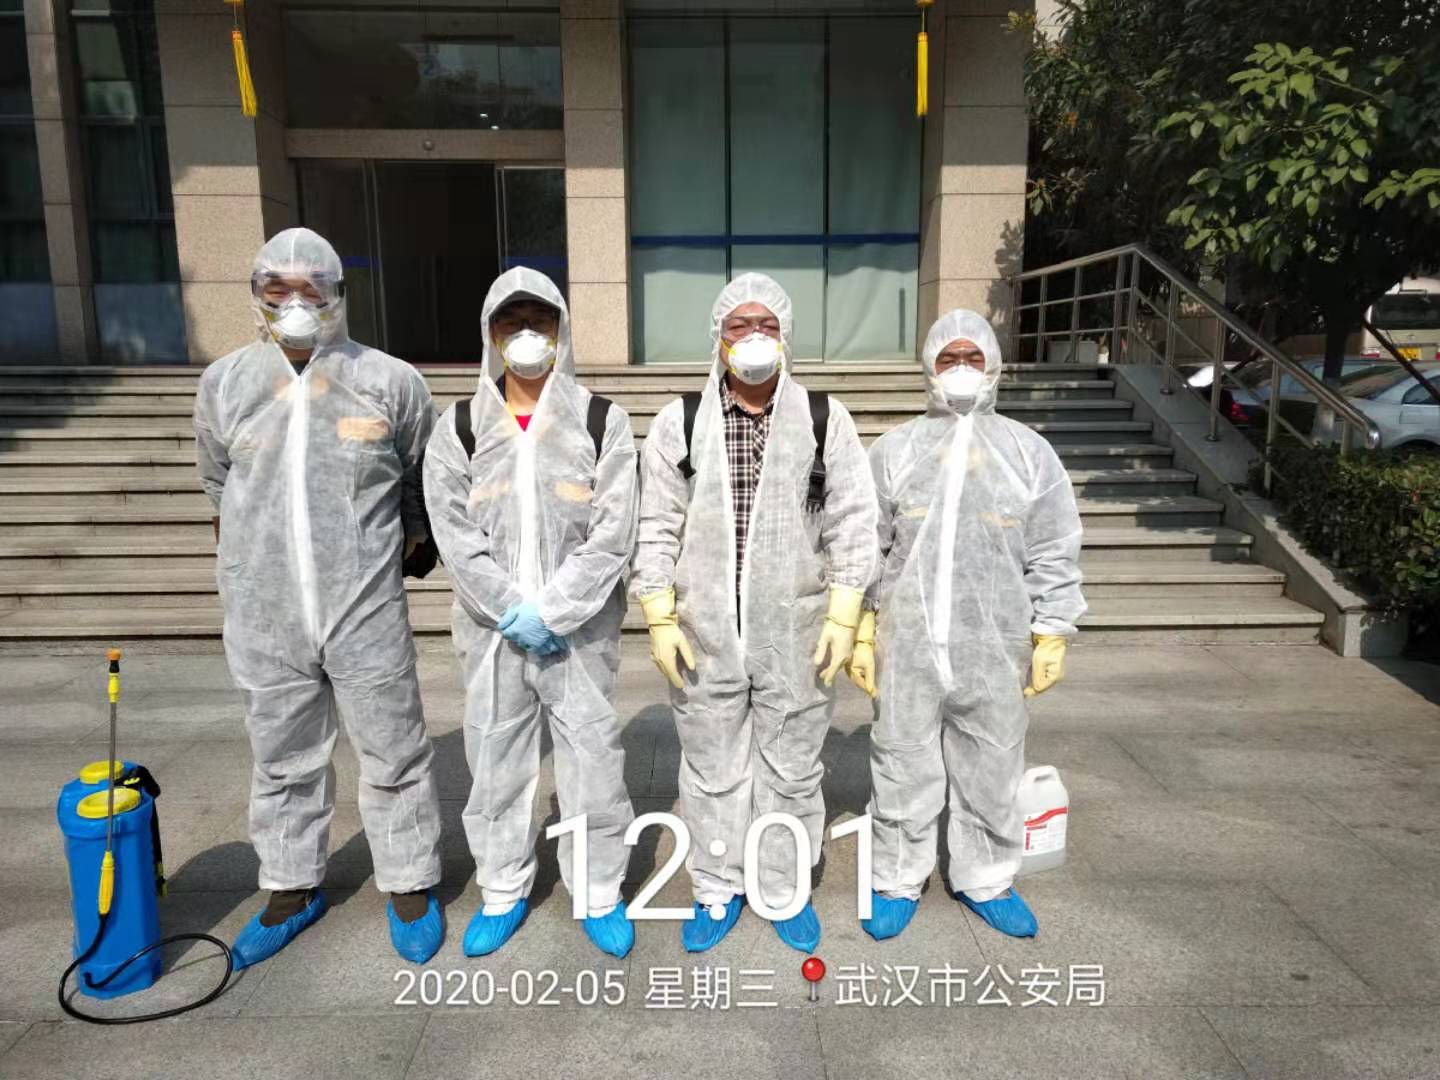 武汉利福泰消毒公司对武汉市公安局进行消毒服务